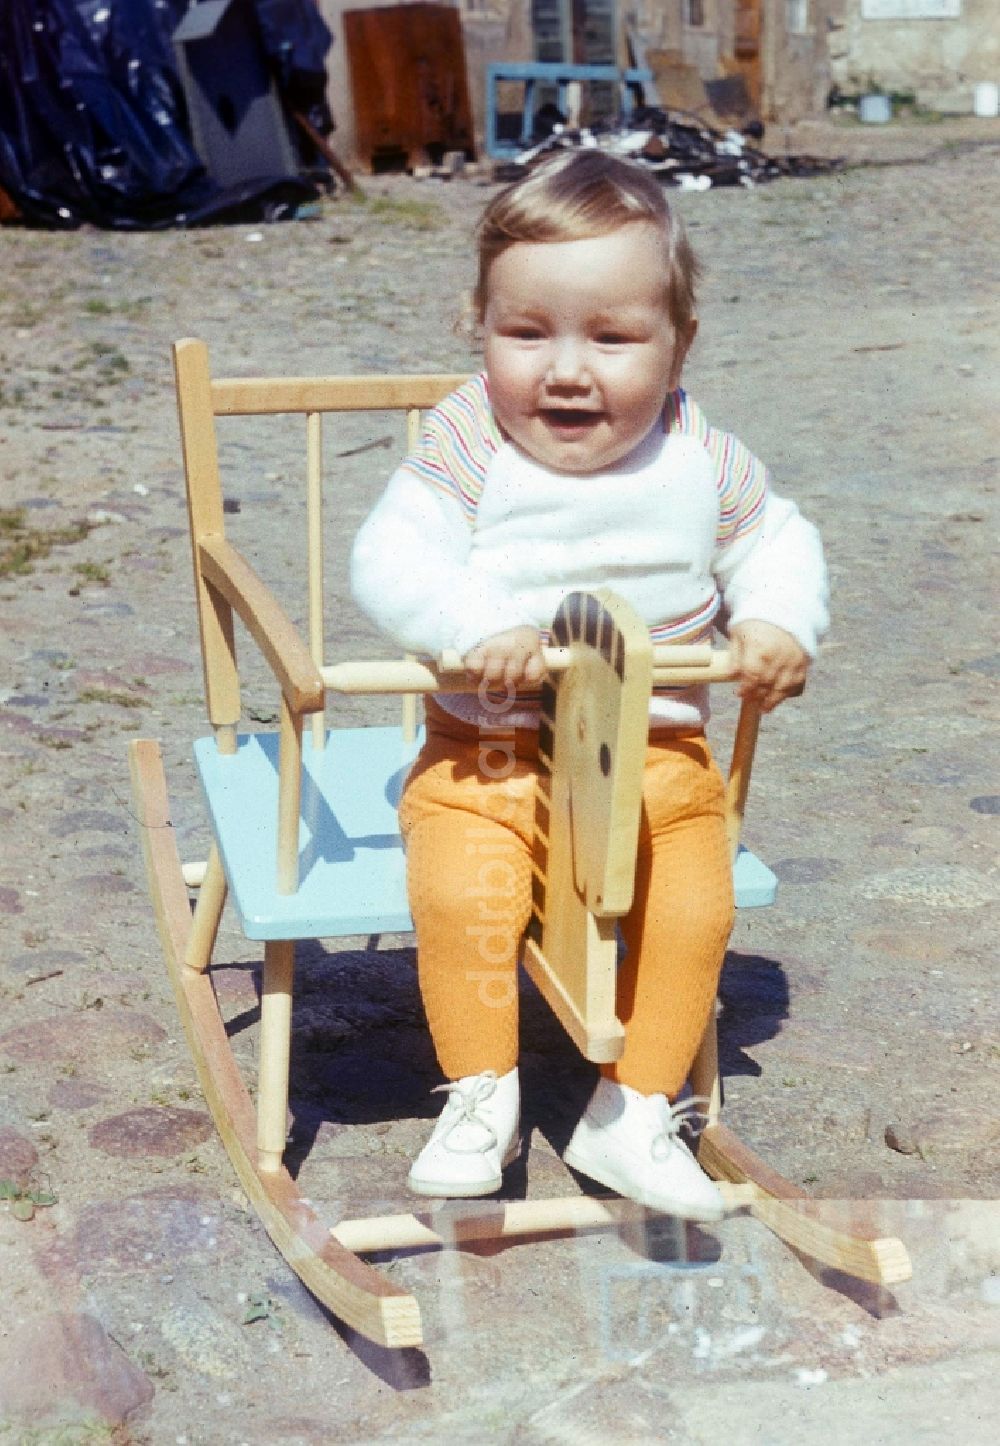 DDR-Fotoarchiv: Neustrelitz - Kleines Kind in einem Holz Schaukelpferd in Neustrelitz in Mecklenburg-Vorpommern in der DDR